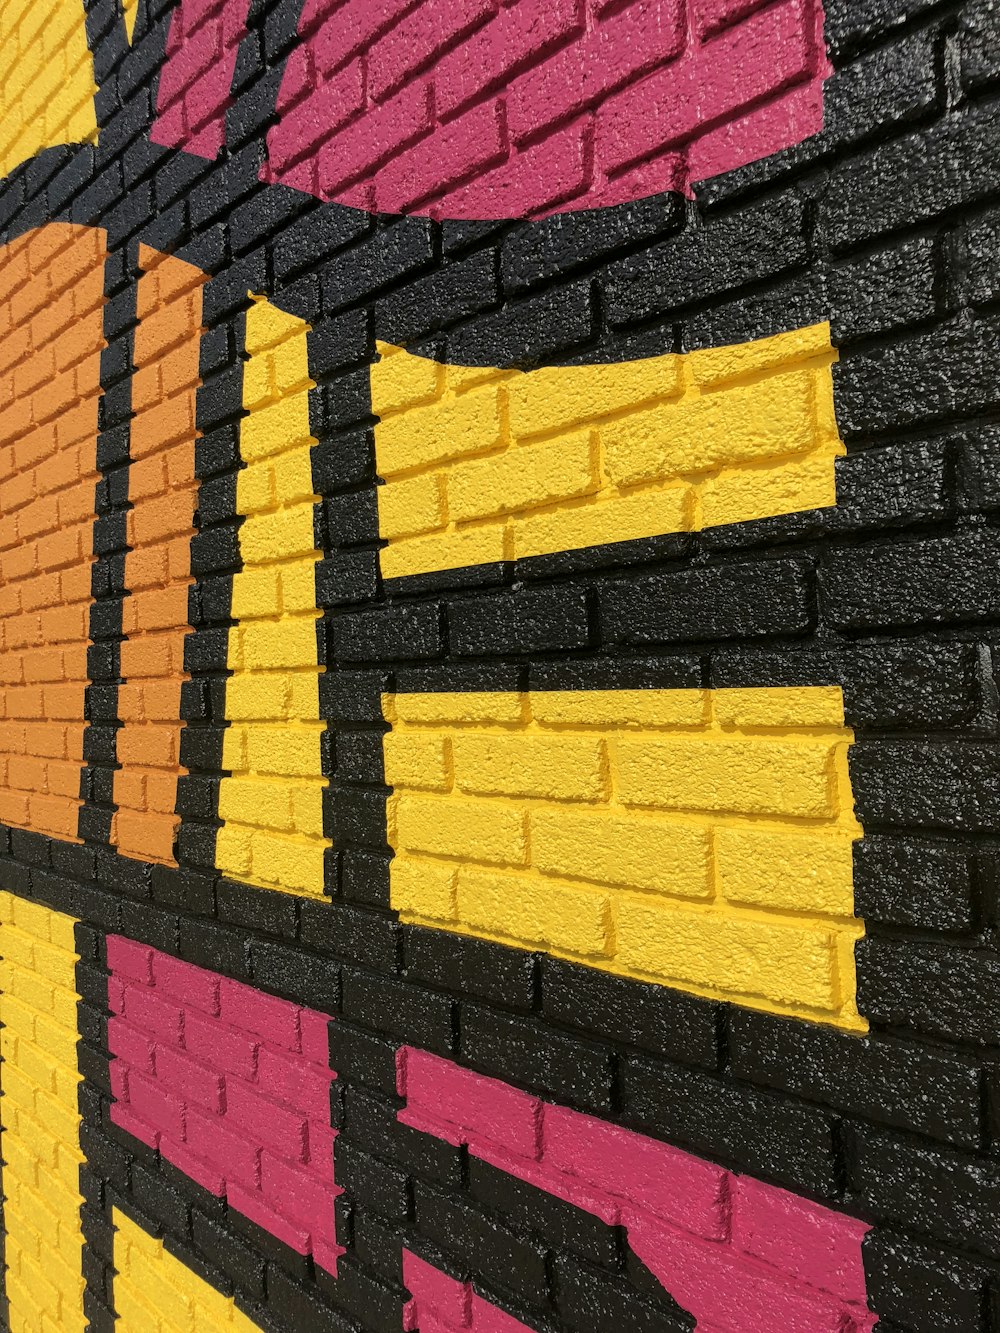 yellow and pink brick wall